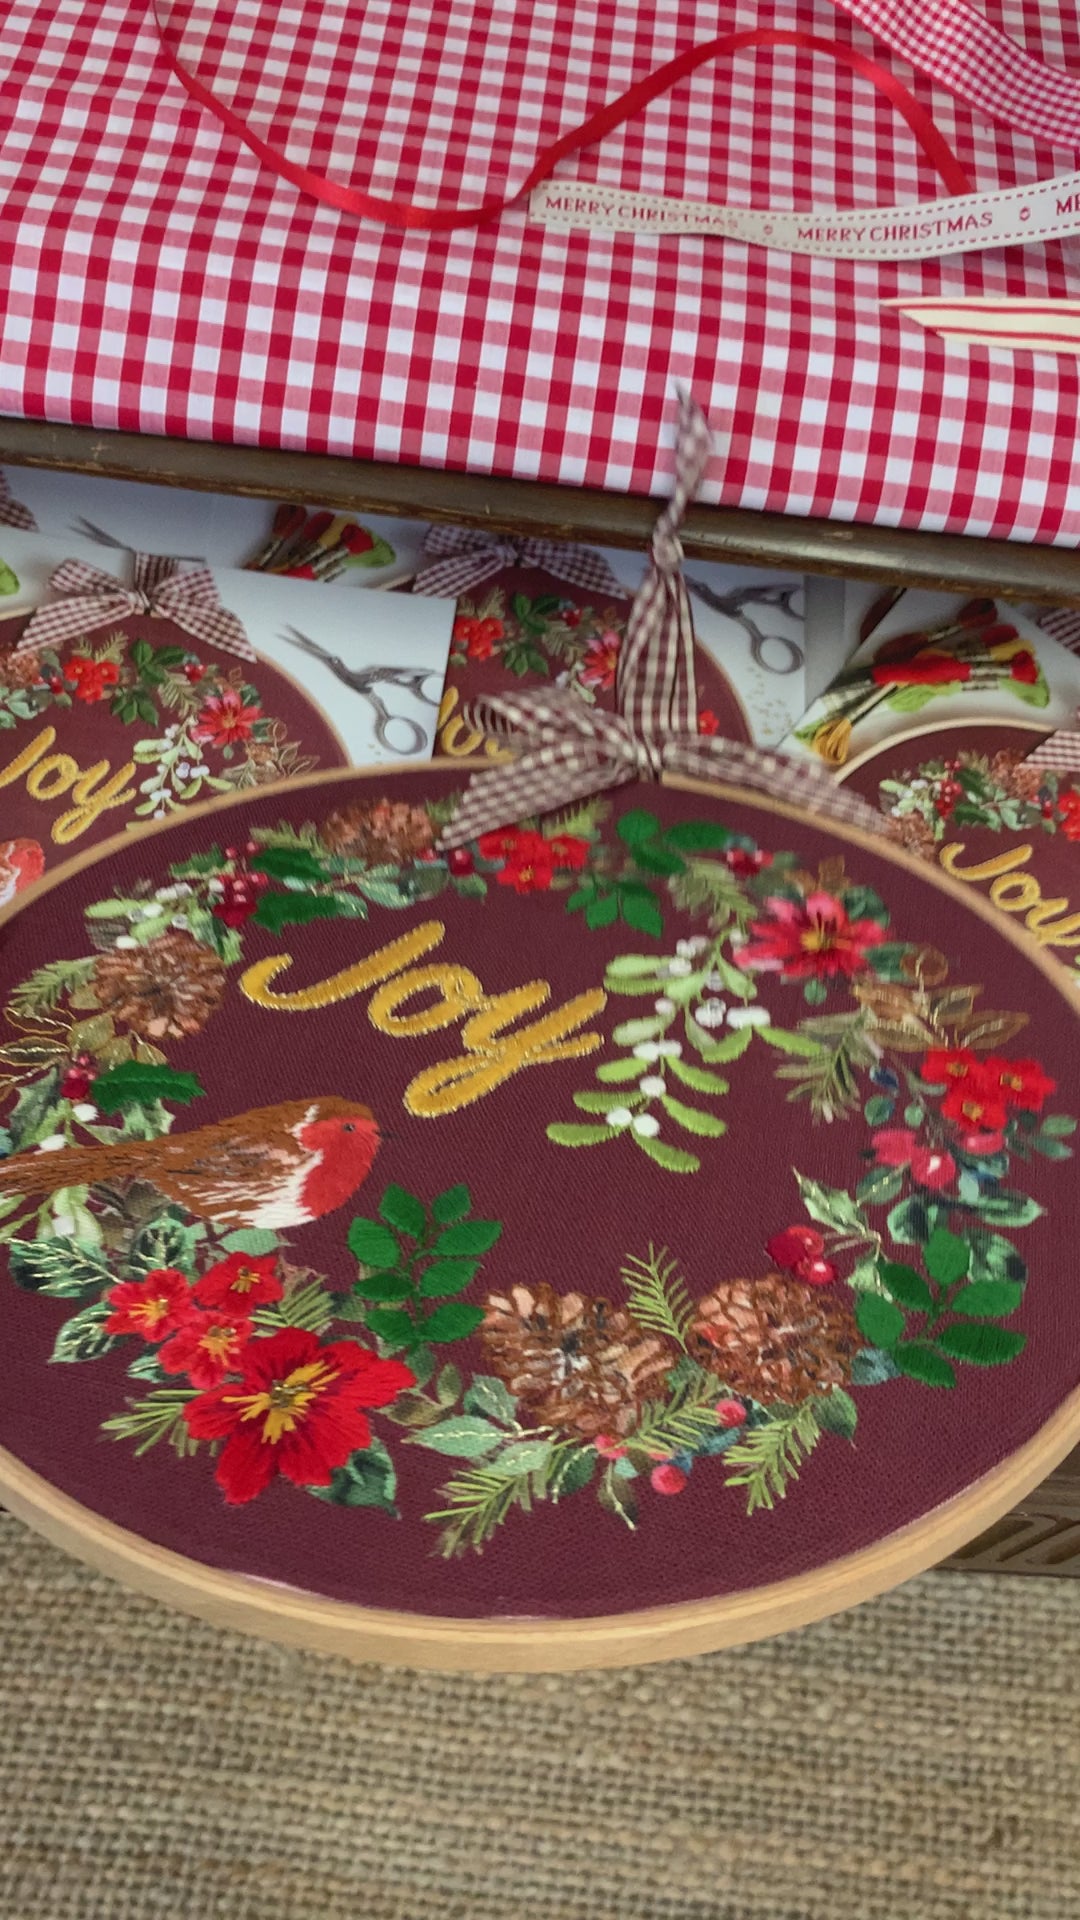 Christmas Joy embroidery panel